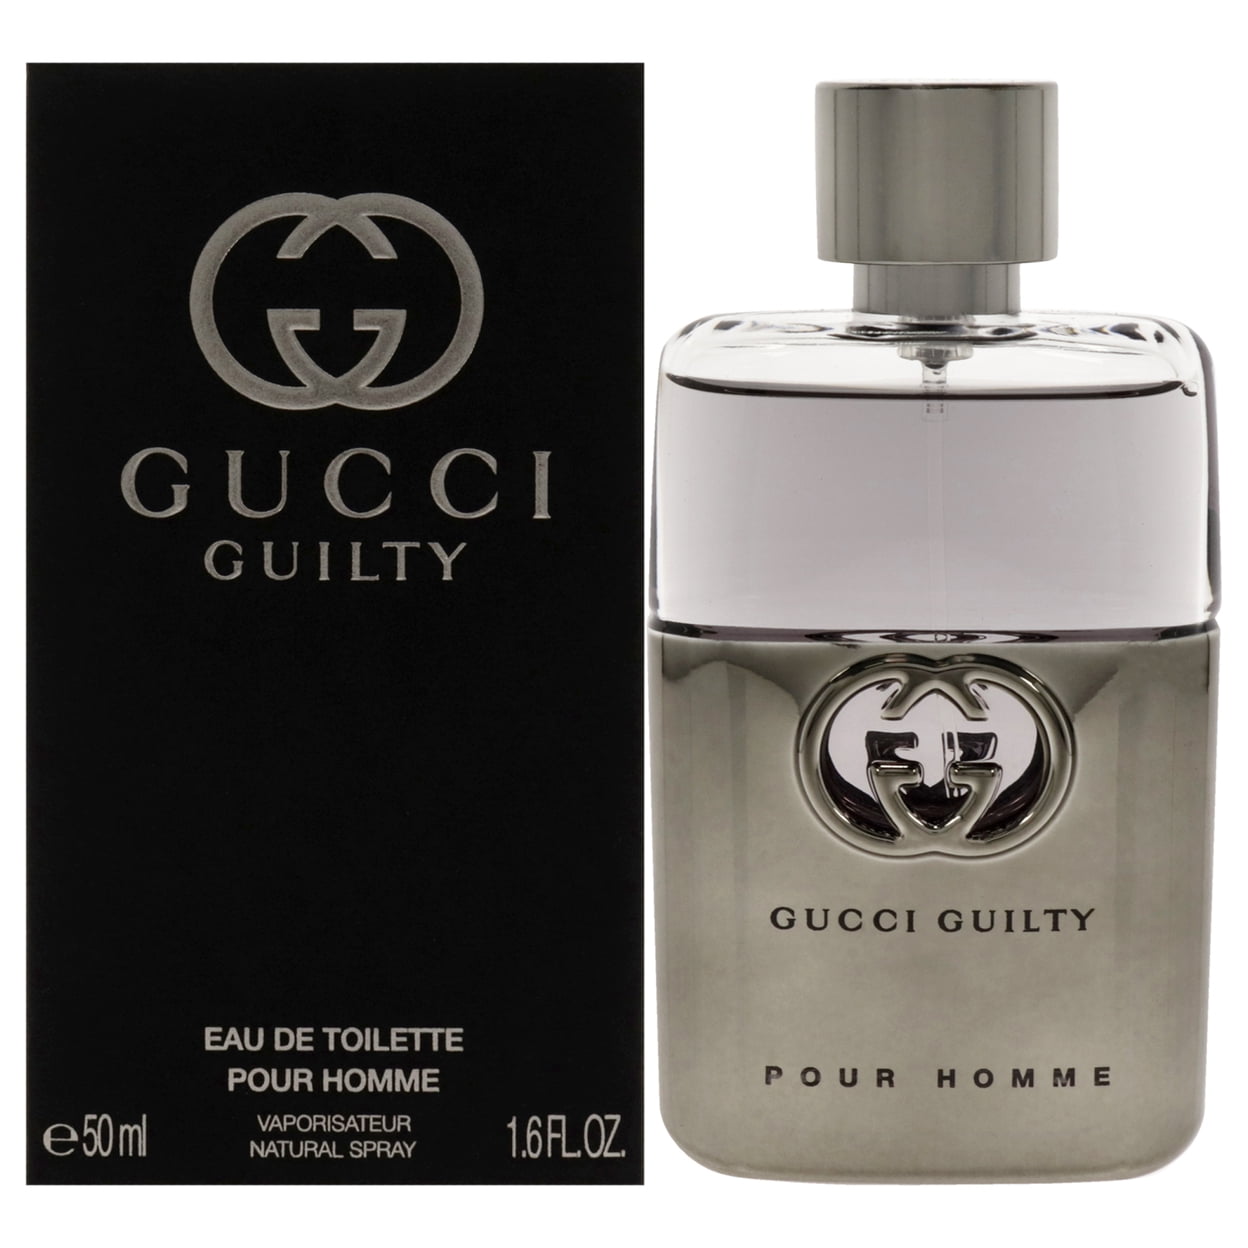 Gucci Guilty Pour Homme / Gucci EDT Spray 5.0 oz (150 ml) (m) 737052924922  - Fragrances & Beauty, Guilty Pour Homme - Jomashop